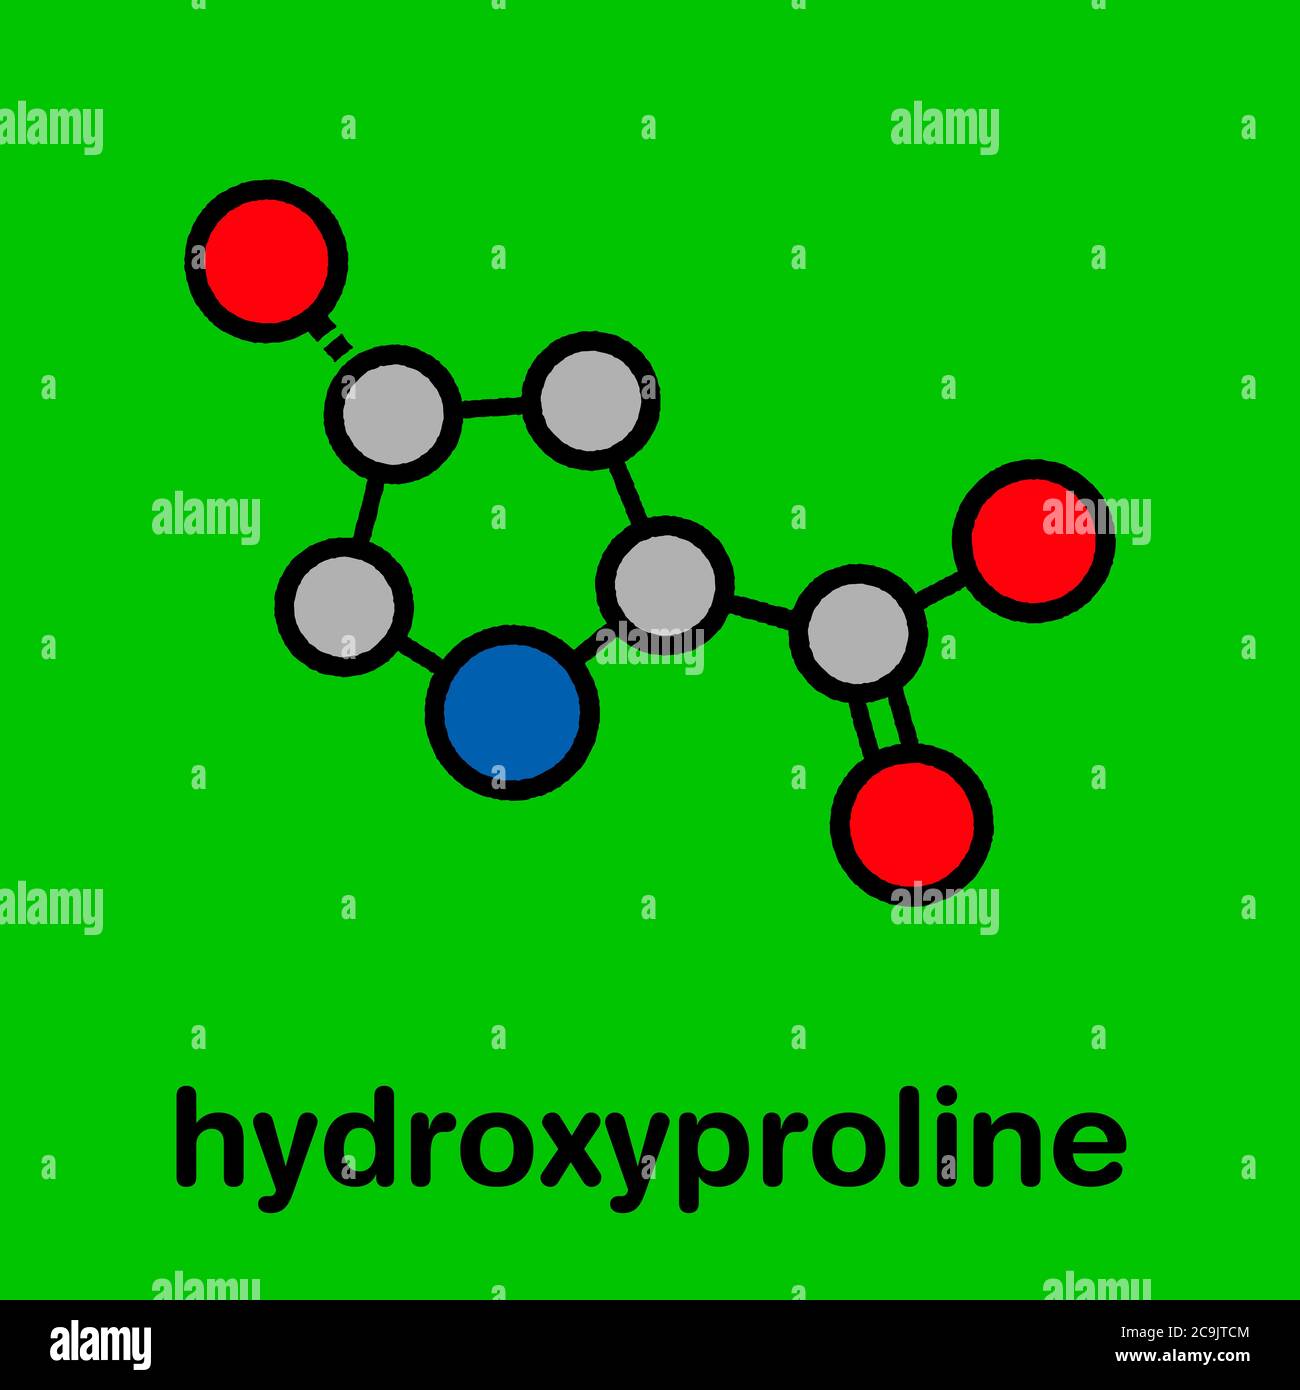 Hydroxyprolin (Hyp) Aminosäure. Wesentlicher Bestandteil von Kollagen.  Stilisierte Skelettformel (chemische Struktur). Atome werden als  farbcodierte Kreise dargestellt Stockfotografie - Alamy